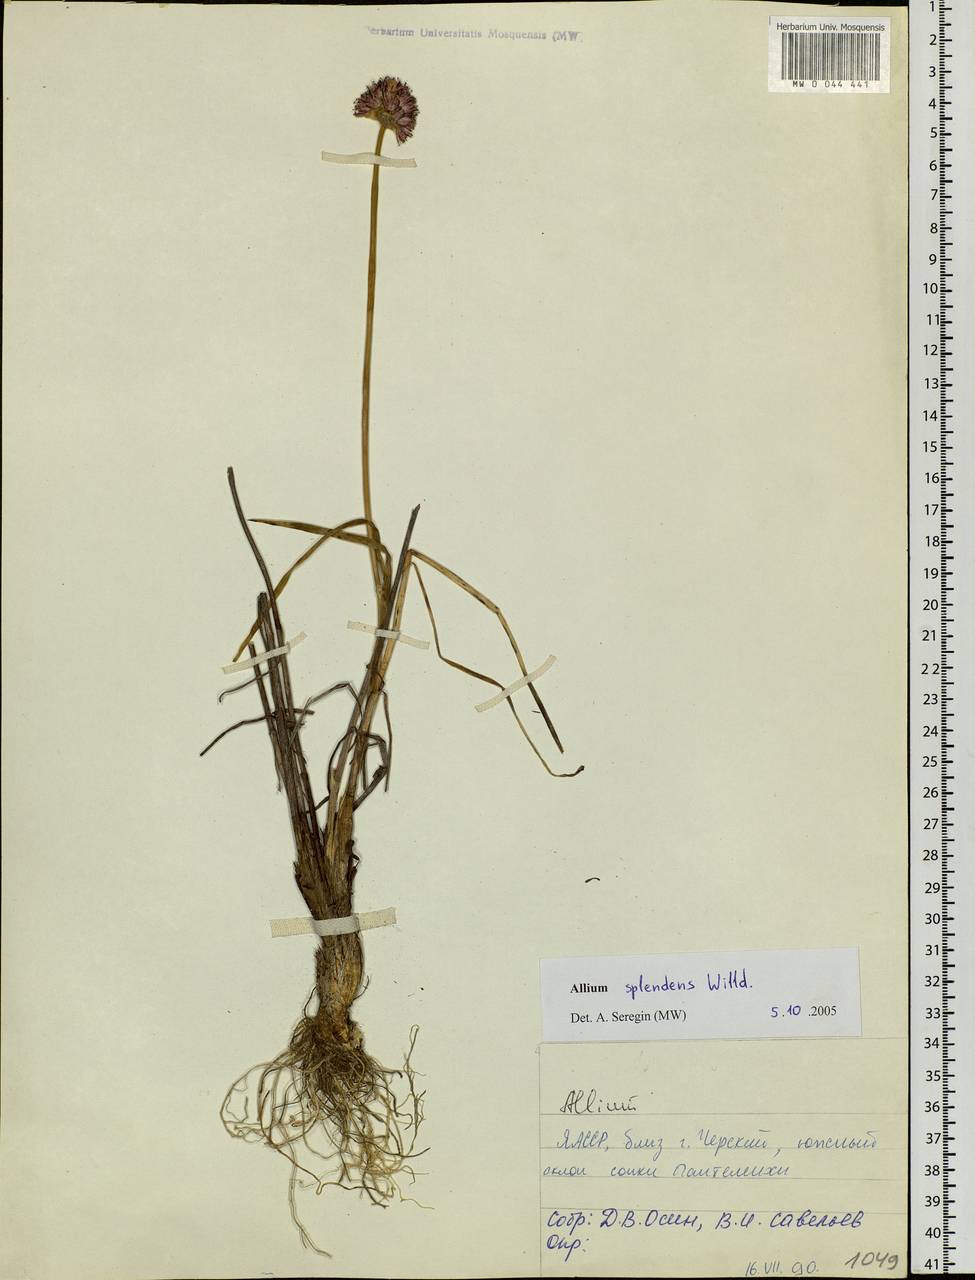 Allium splendens Willd. ex Schult. & Schult.f., Siberia, Yakutia (S5) (Russia)